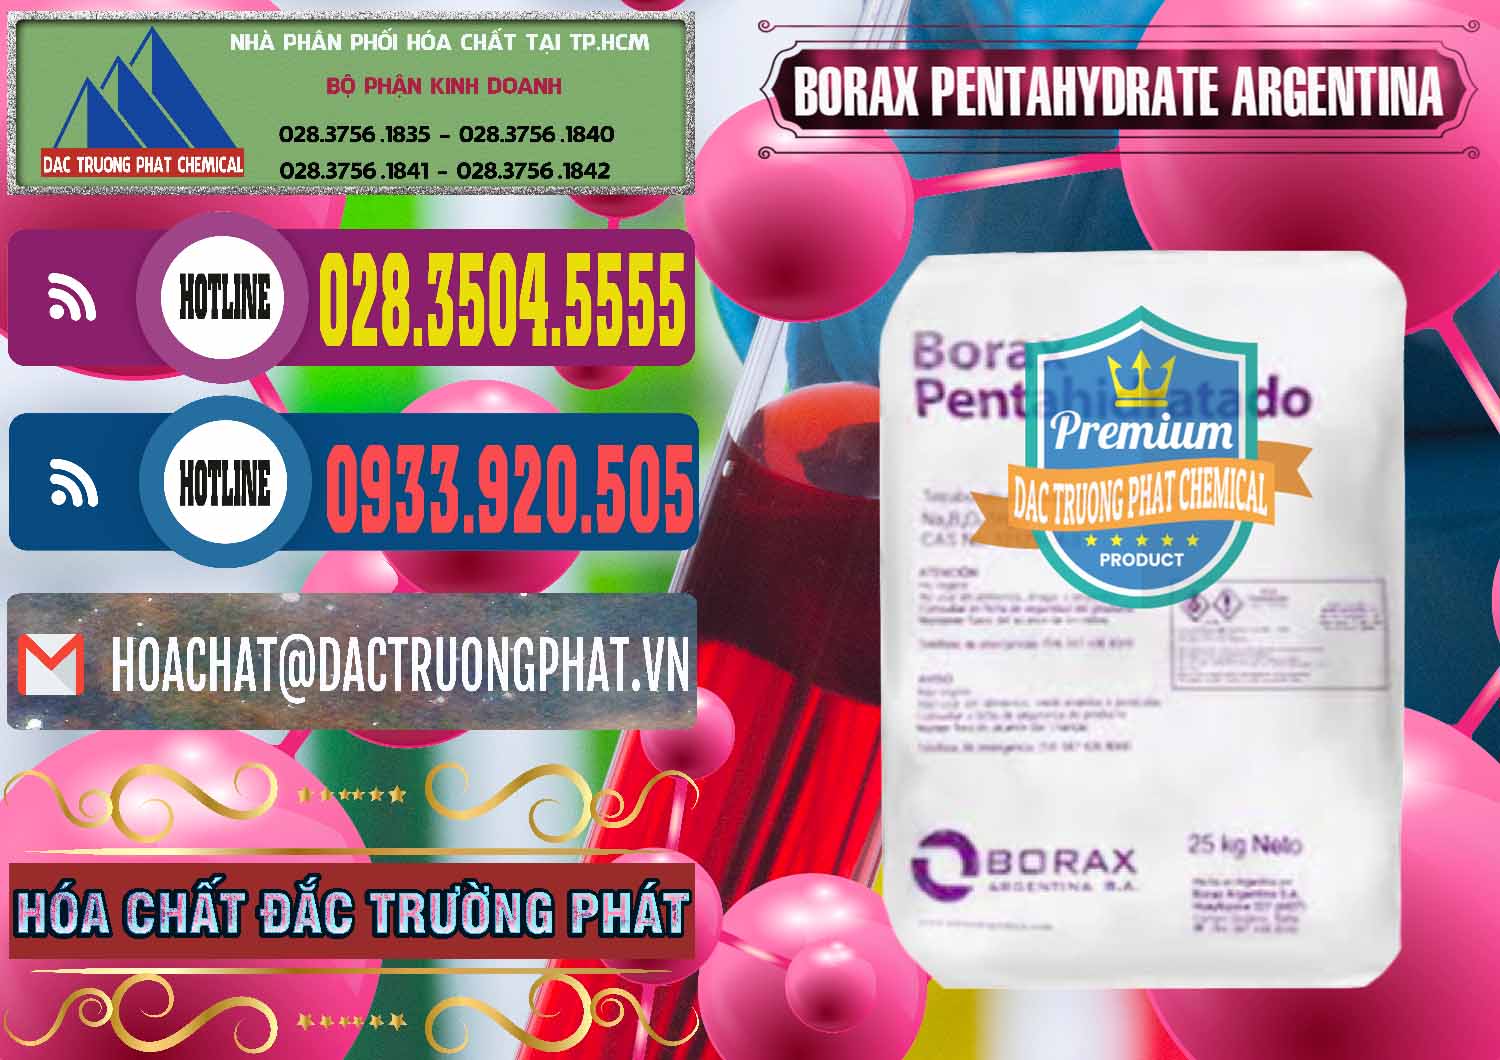 Cty bán ( cung ứng ) Borax Pentahydrate Argentina - 0447 - Đơn vị chuyên cung cấp và bán hóa chất tại TP.HCM - muabanhoachat.com.vn